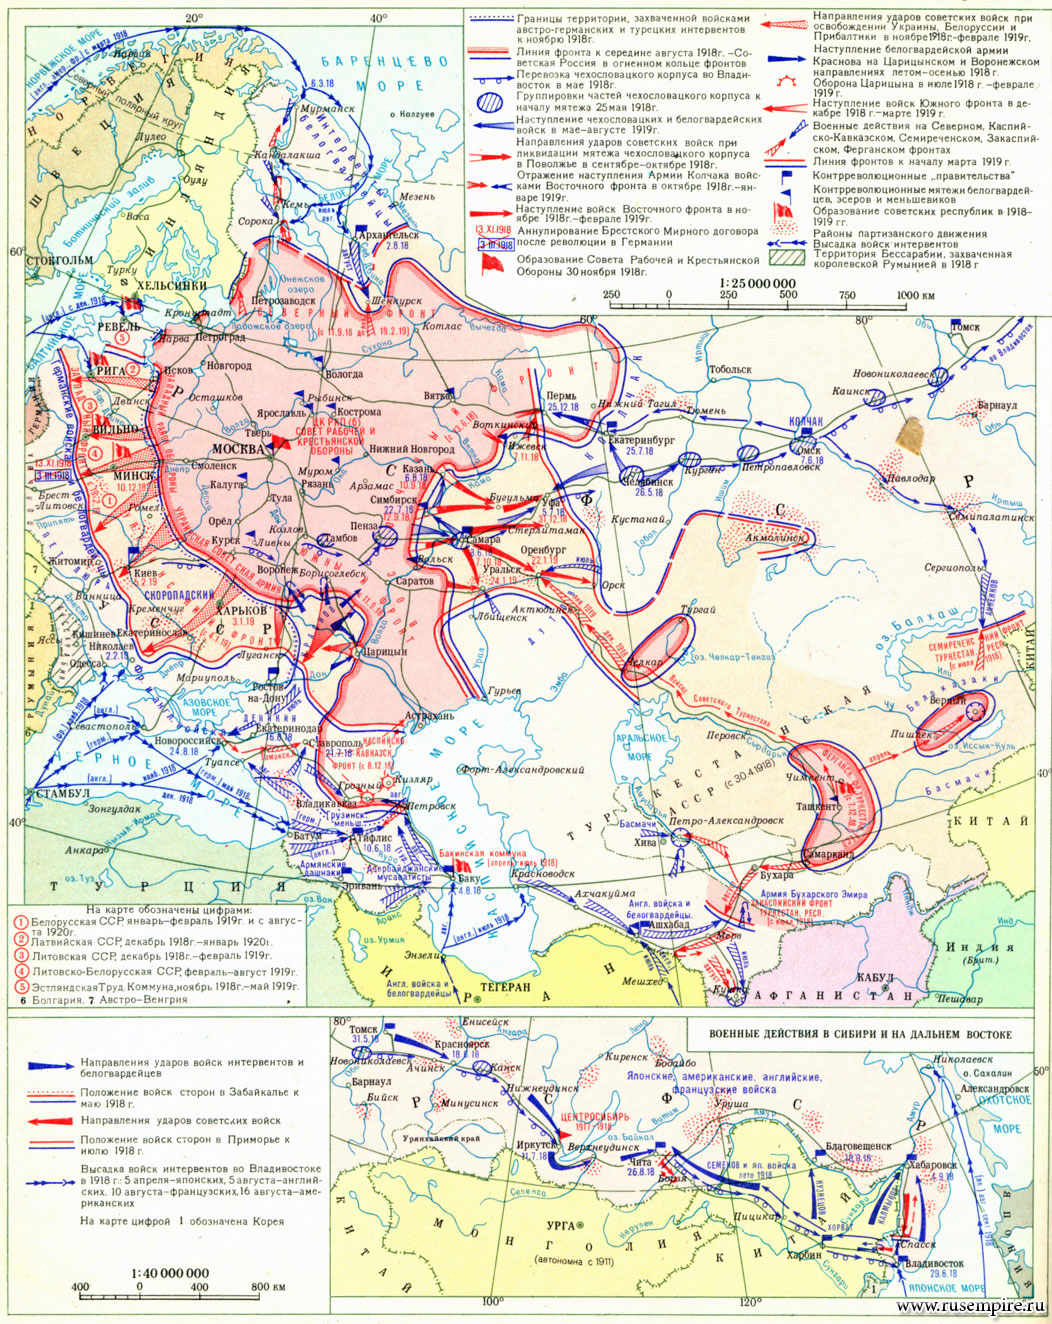 Нашествие наполеоновской армии на россию карта